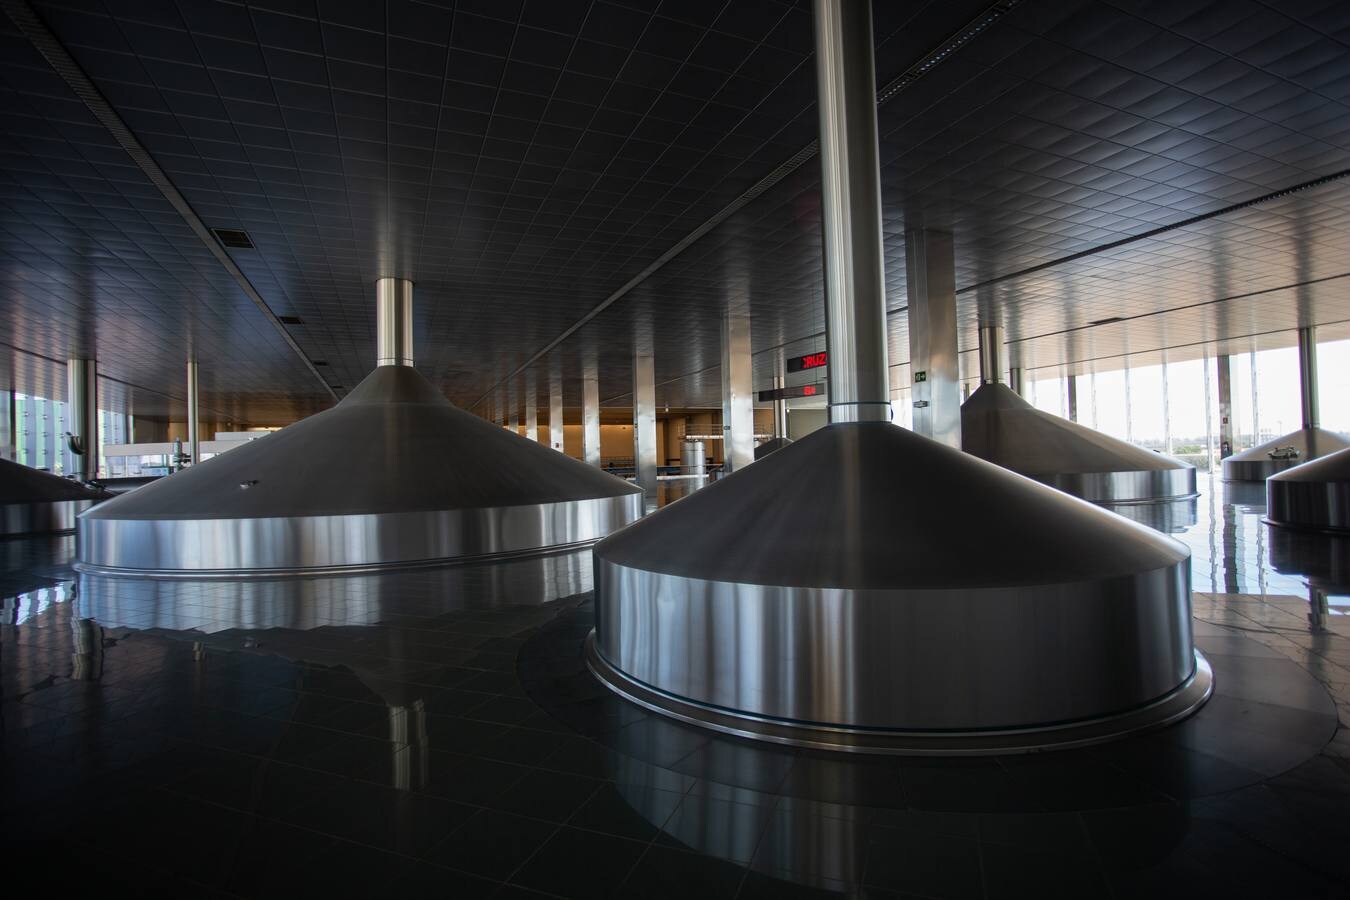 La cerveza supone el 40% de los ingresos de los bares andaluces